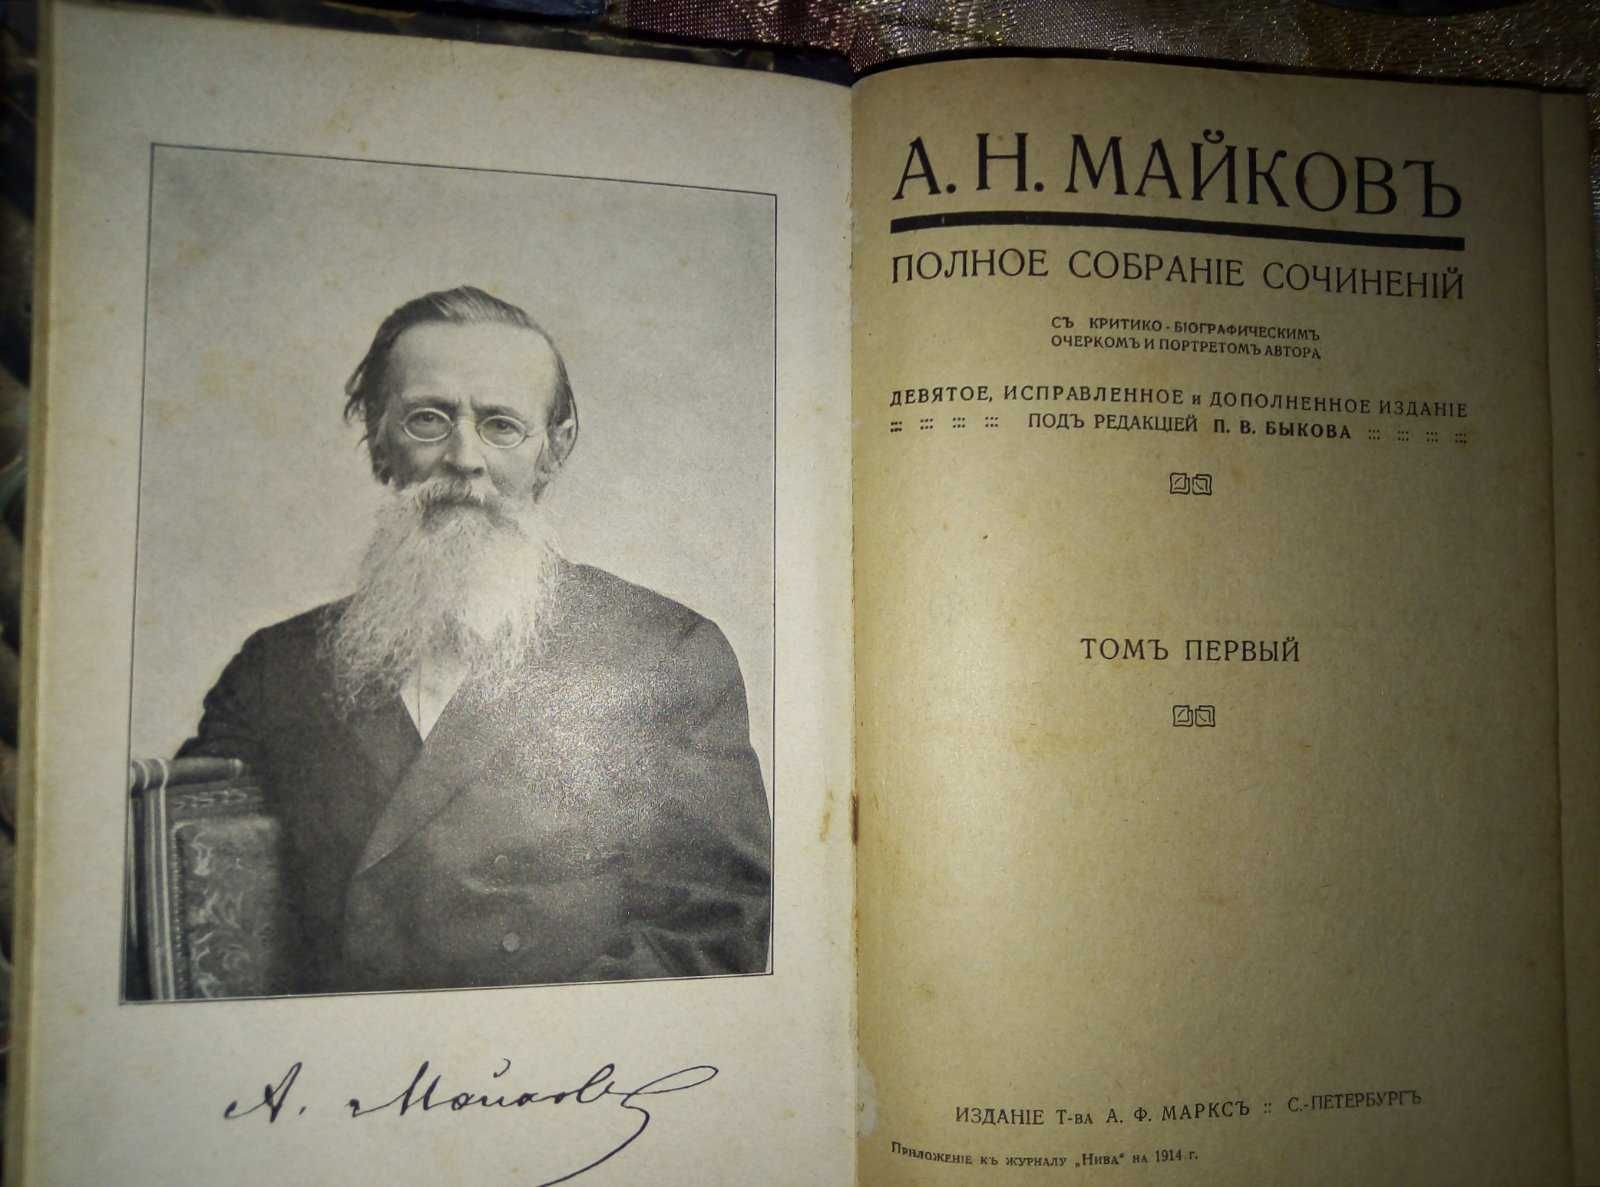 Полное собрание сочинений А.Н. Майков, 1914 г.